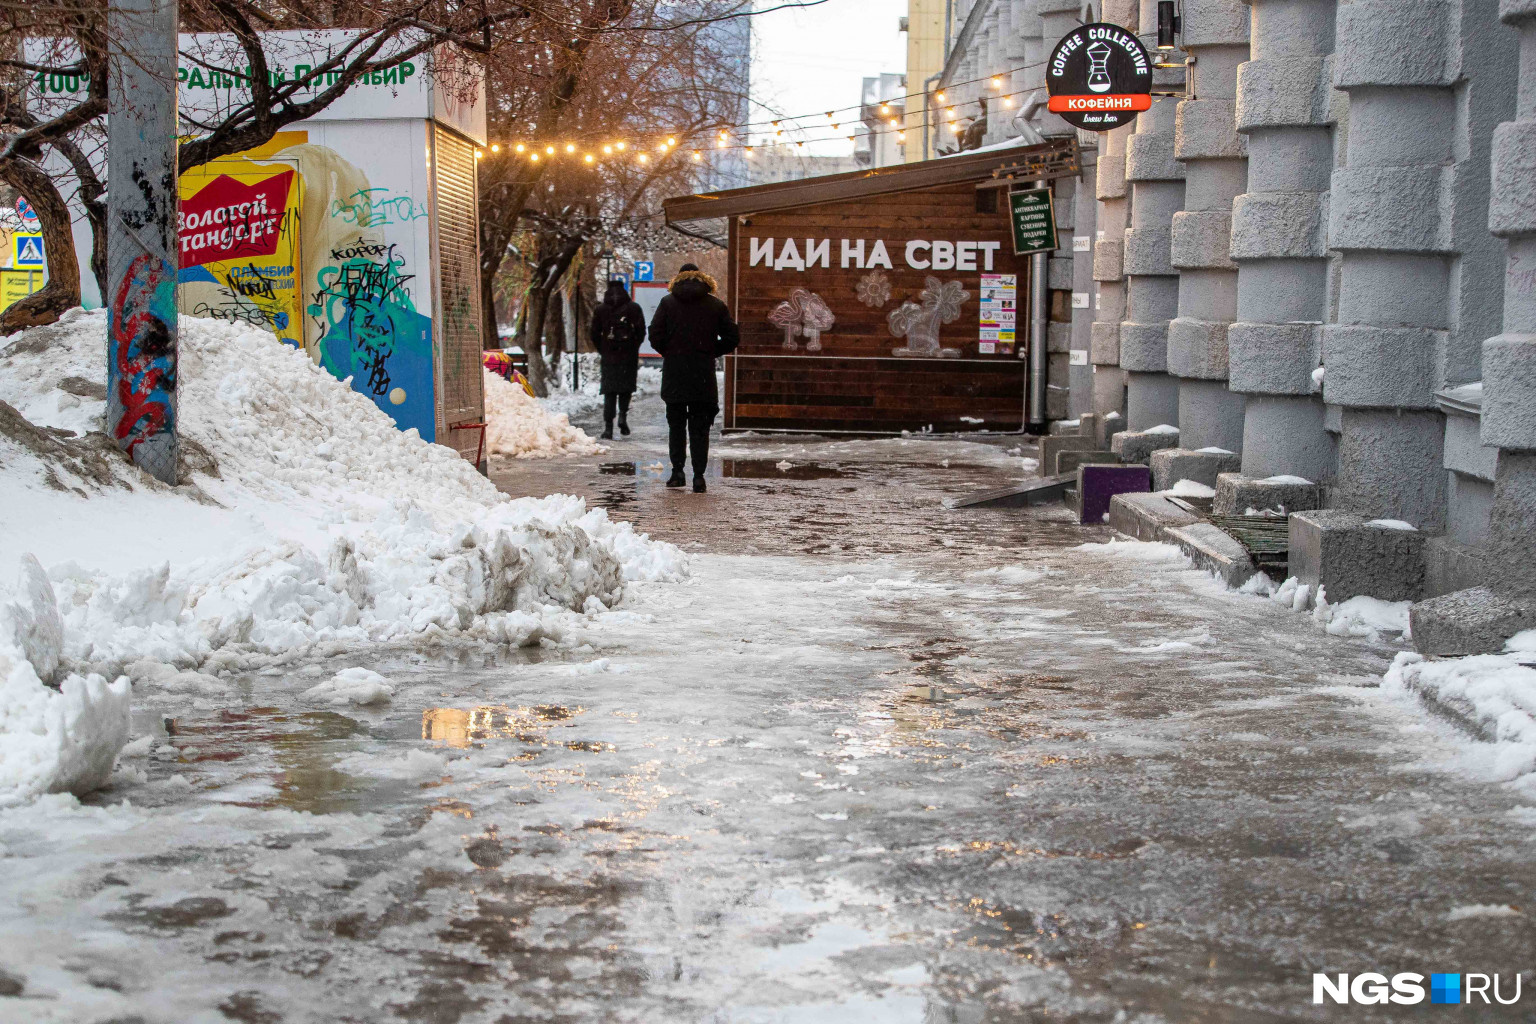 От перепада температур тротуары покрылись коркой льда и больше напоминают каток